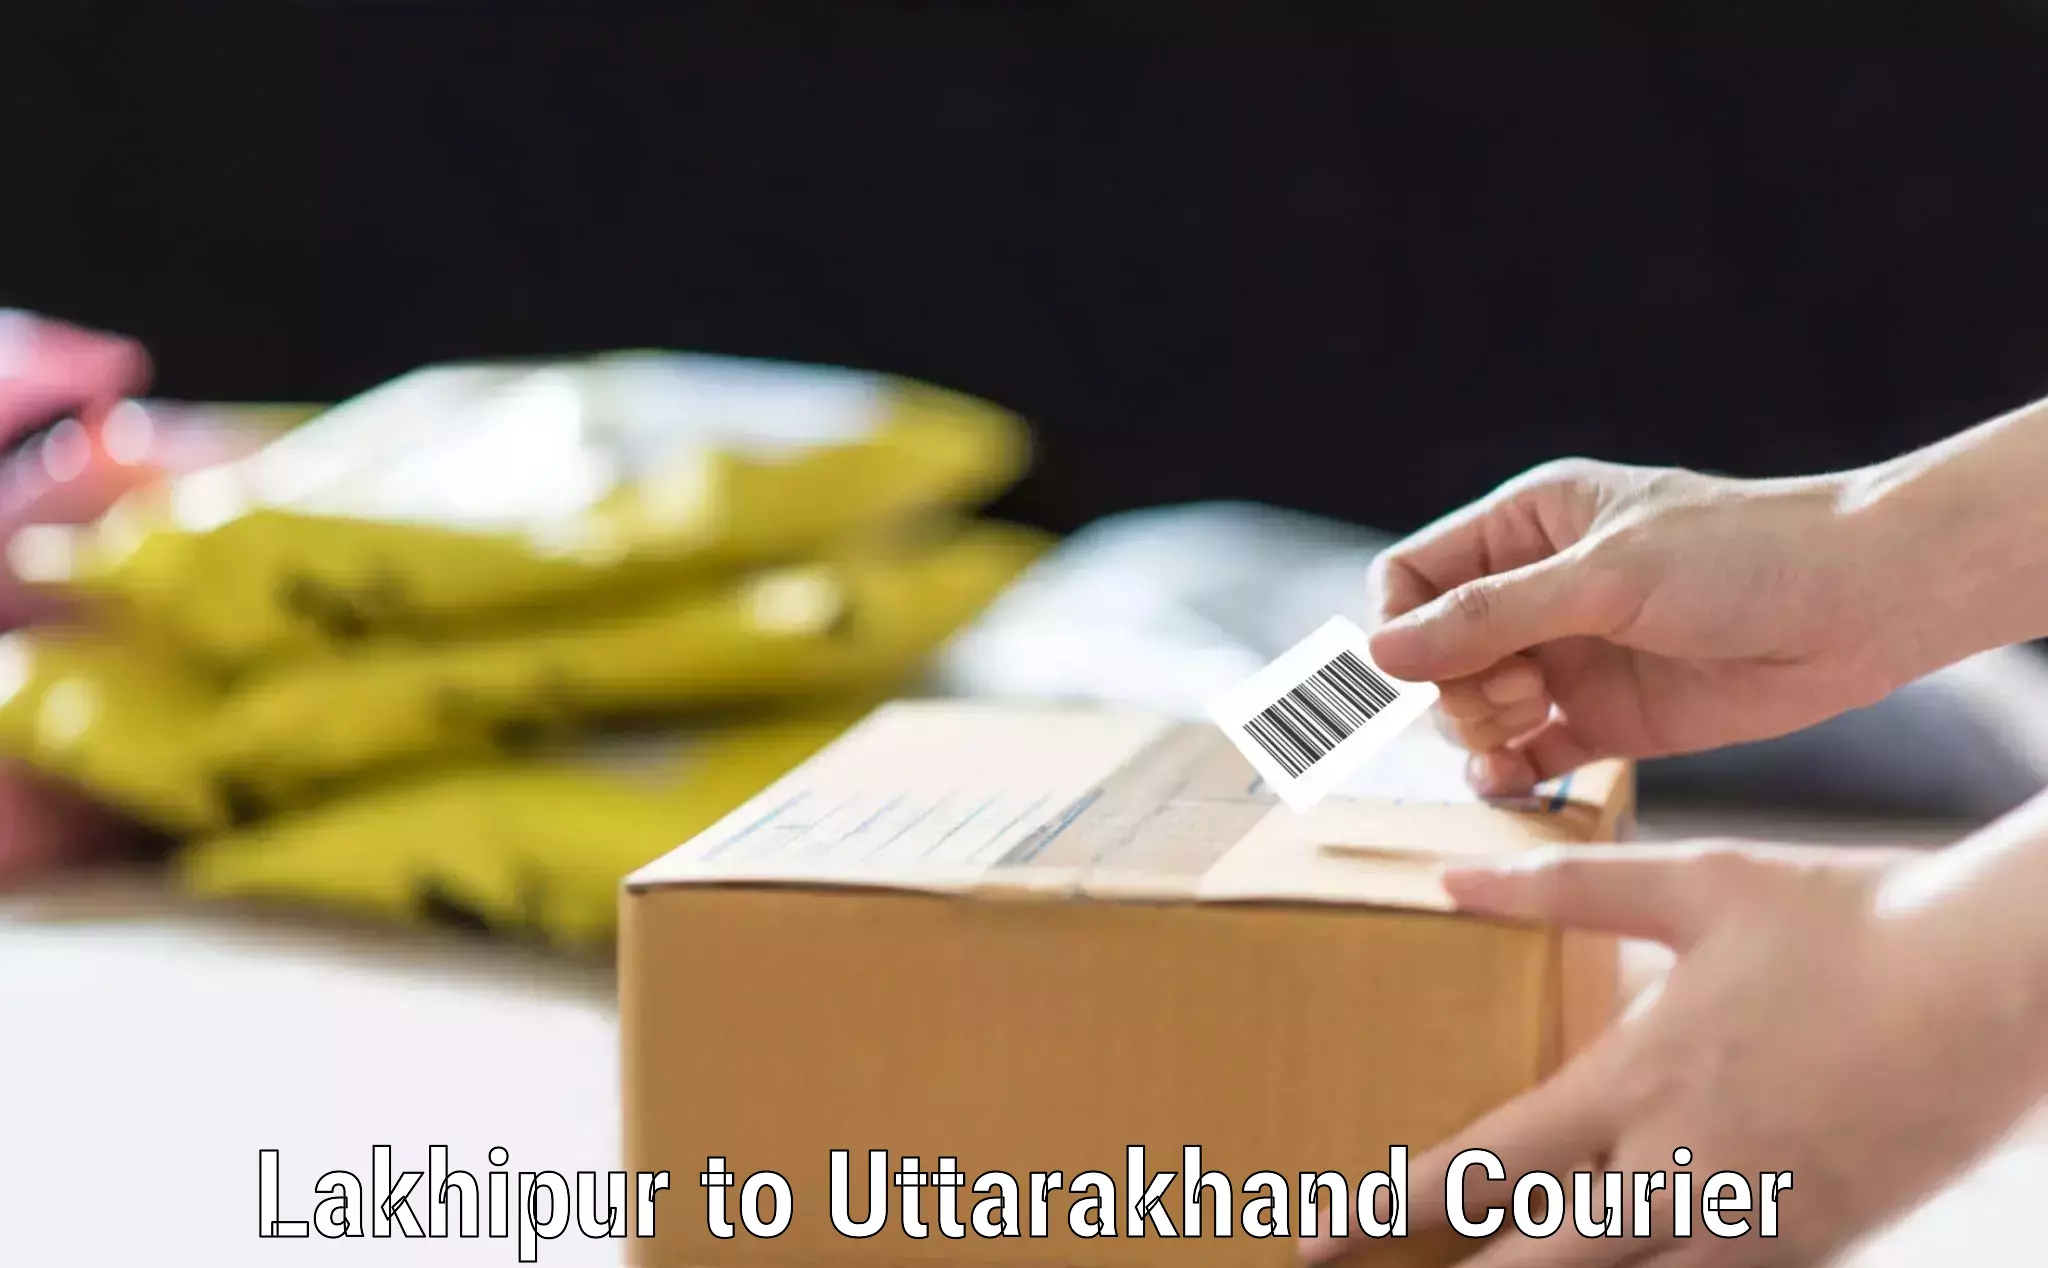 Baggage courier advice Lakhipur to Uttarakhand